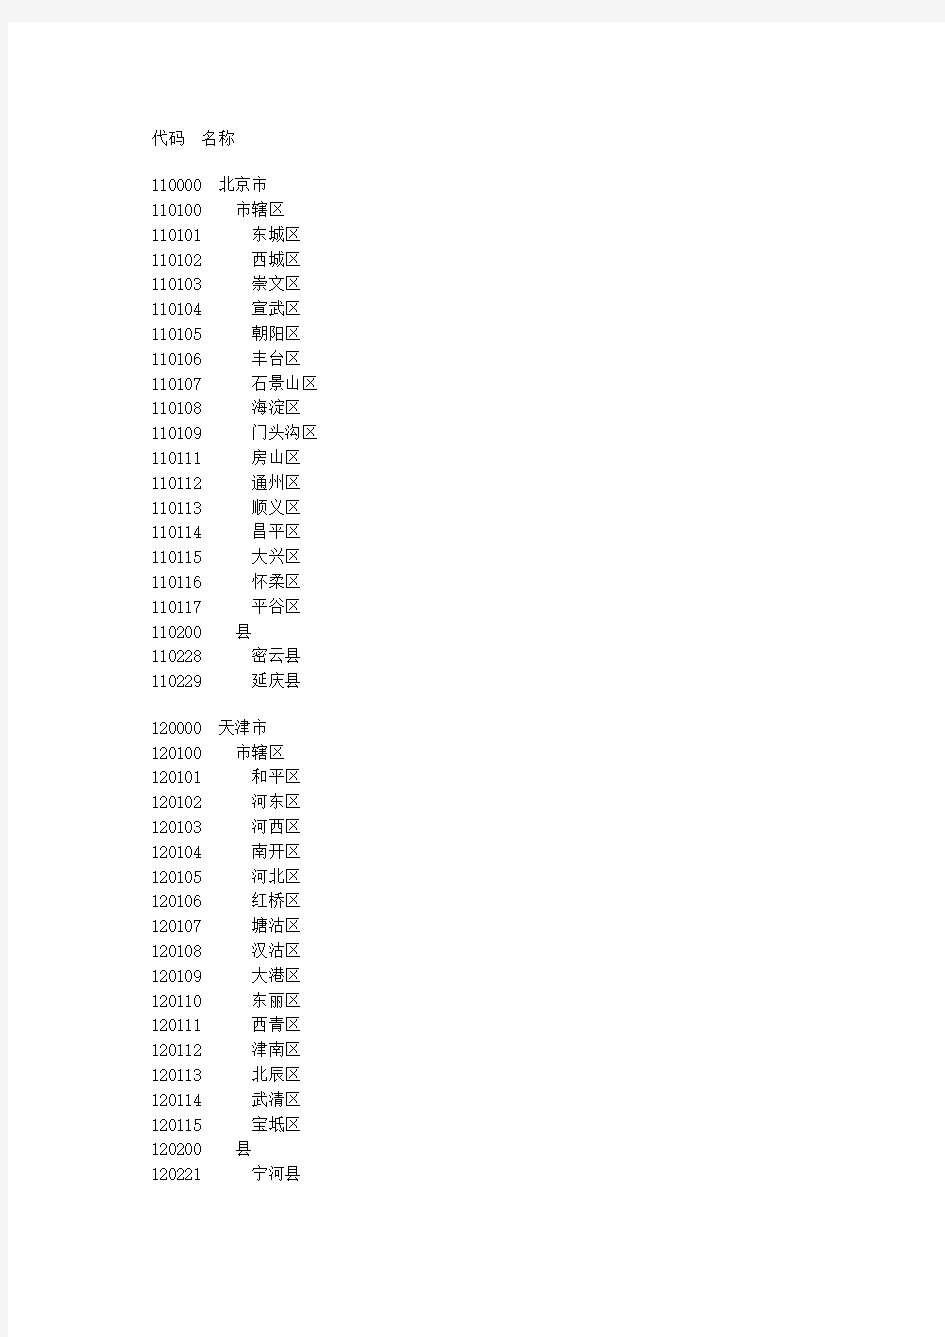 最新县及县以上行政区划代码(截止2008年12月31日)